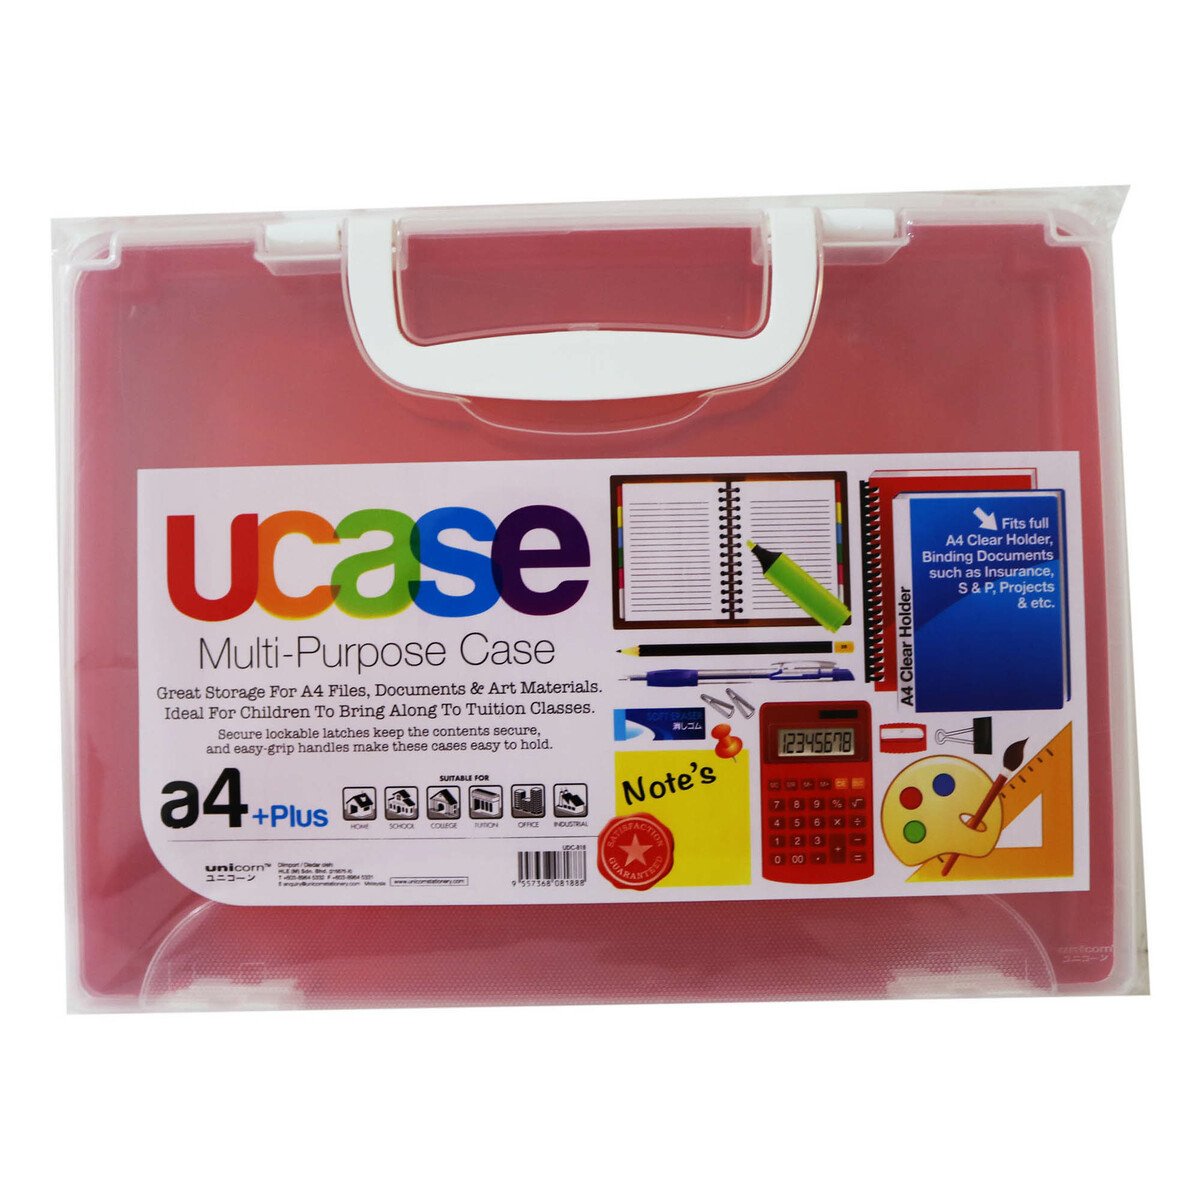 Unicorn Document Case Udc-818 55Mm